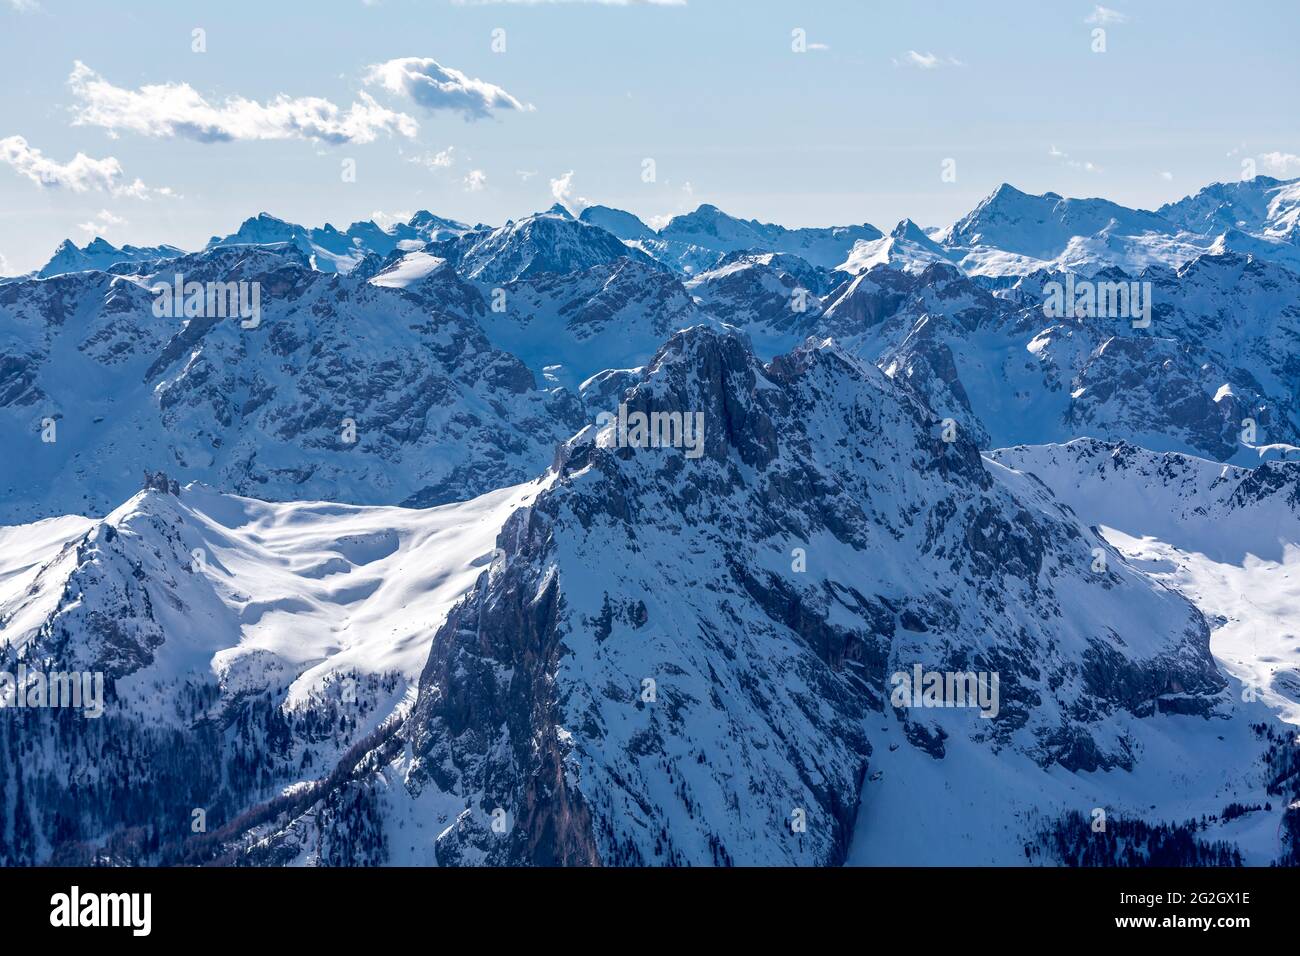 Vista dalla terrazza panoramica del Sass Pordoi sulle montagne delle Dolomiti, Passo Pordoi, Sellaronda, Alto Adige, Alto Adige, Dolomiti, Italia, Europa Foto Stock